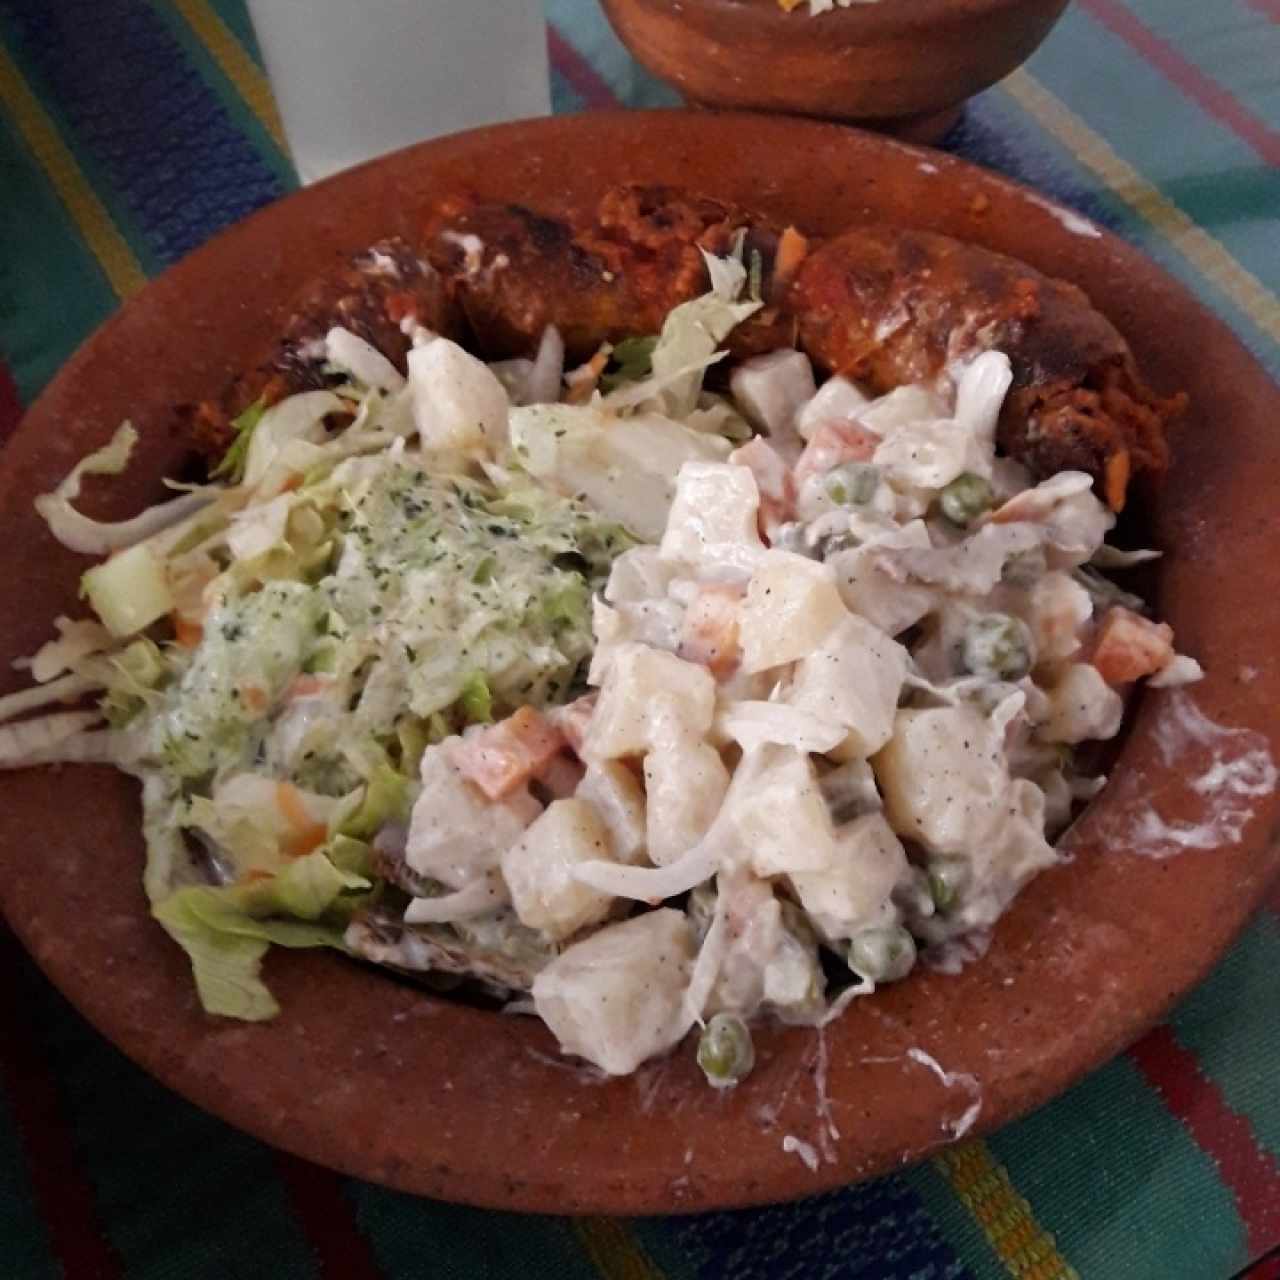 Chorizo, acompañado de ensalada rusa, ensalada de vegetales y arroz.